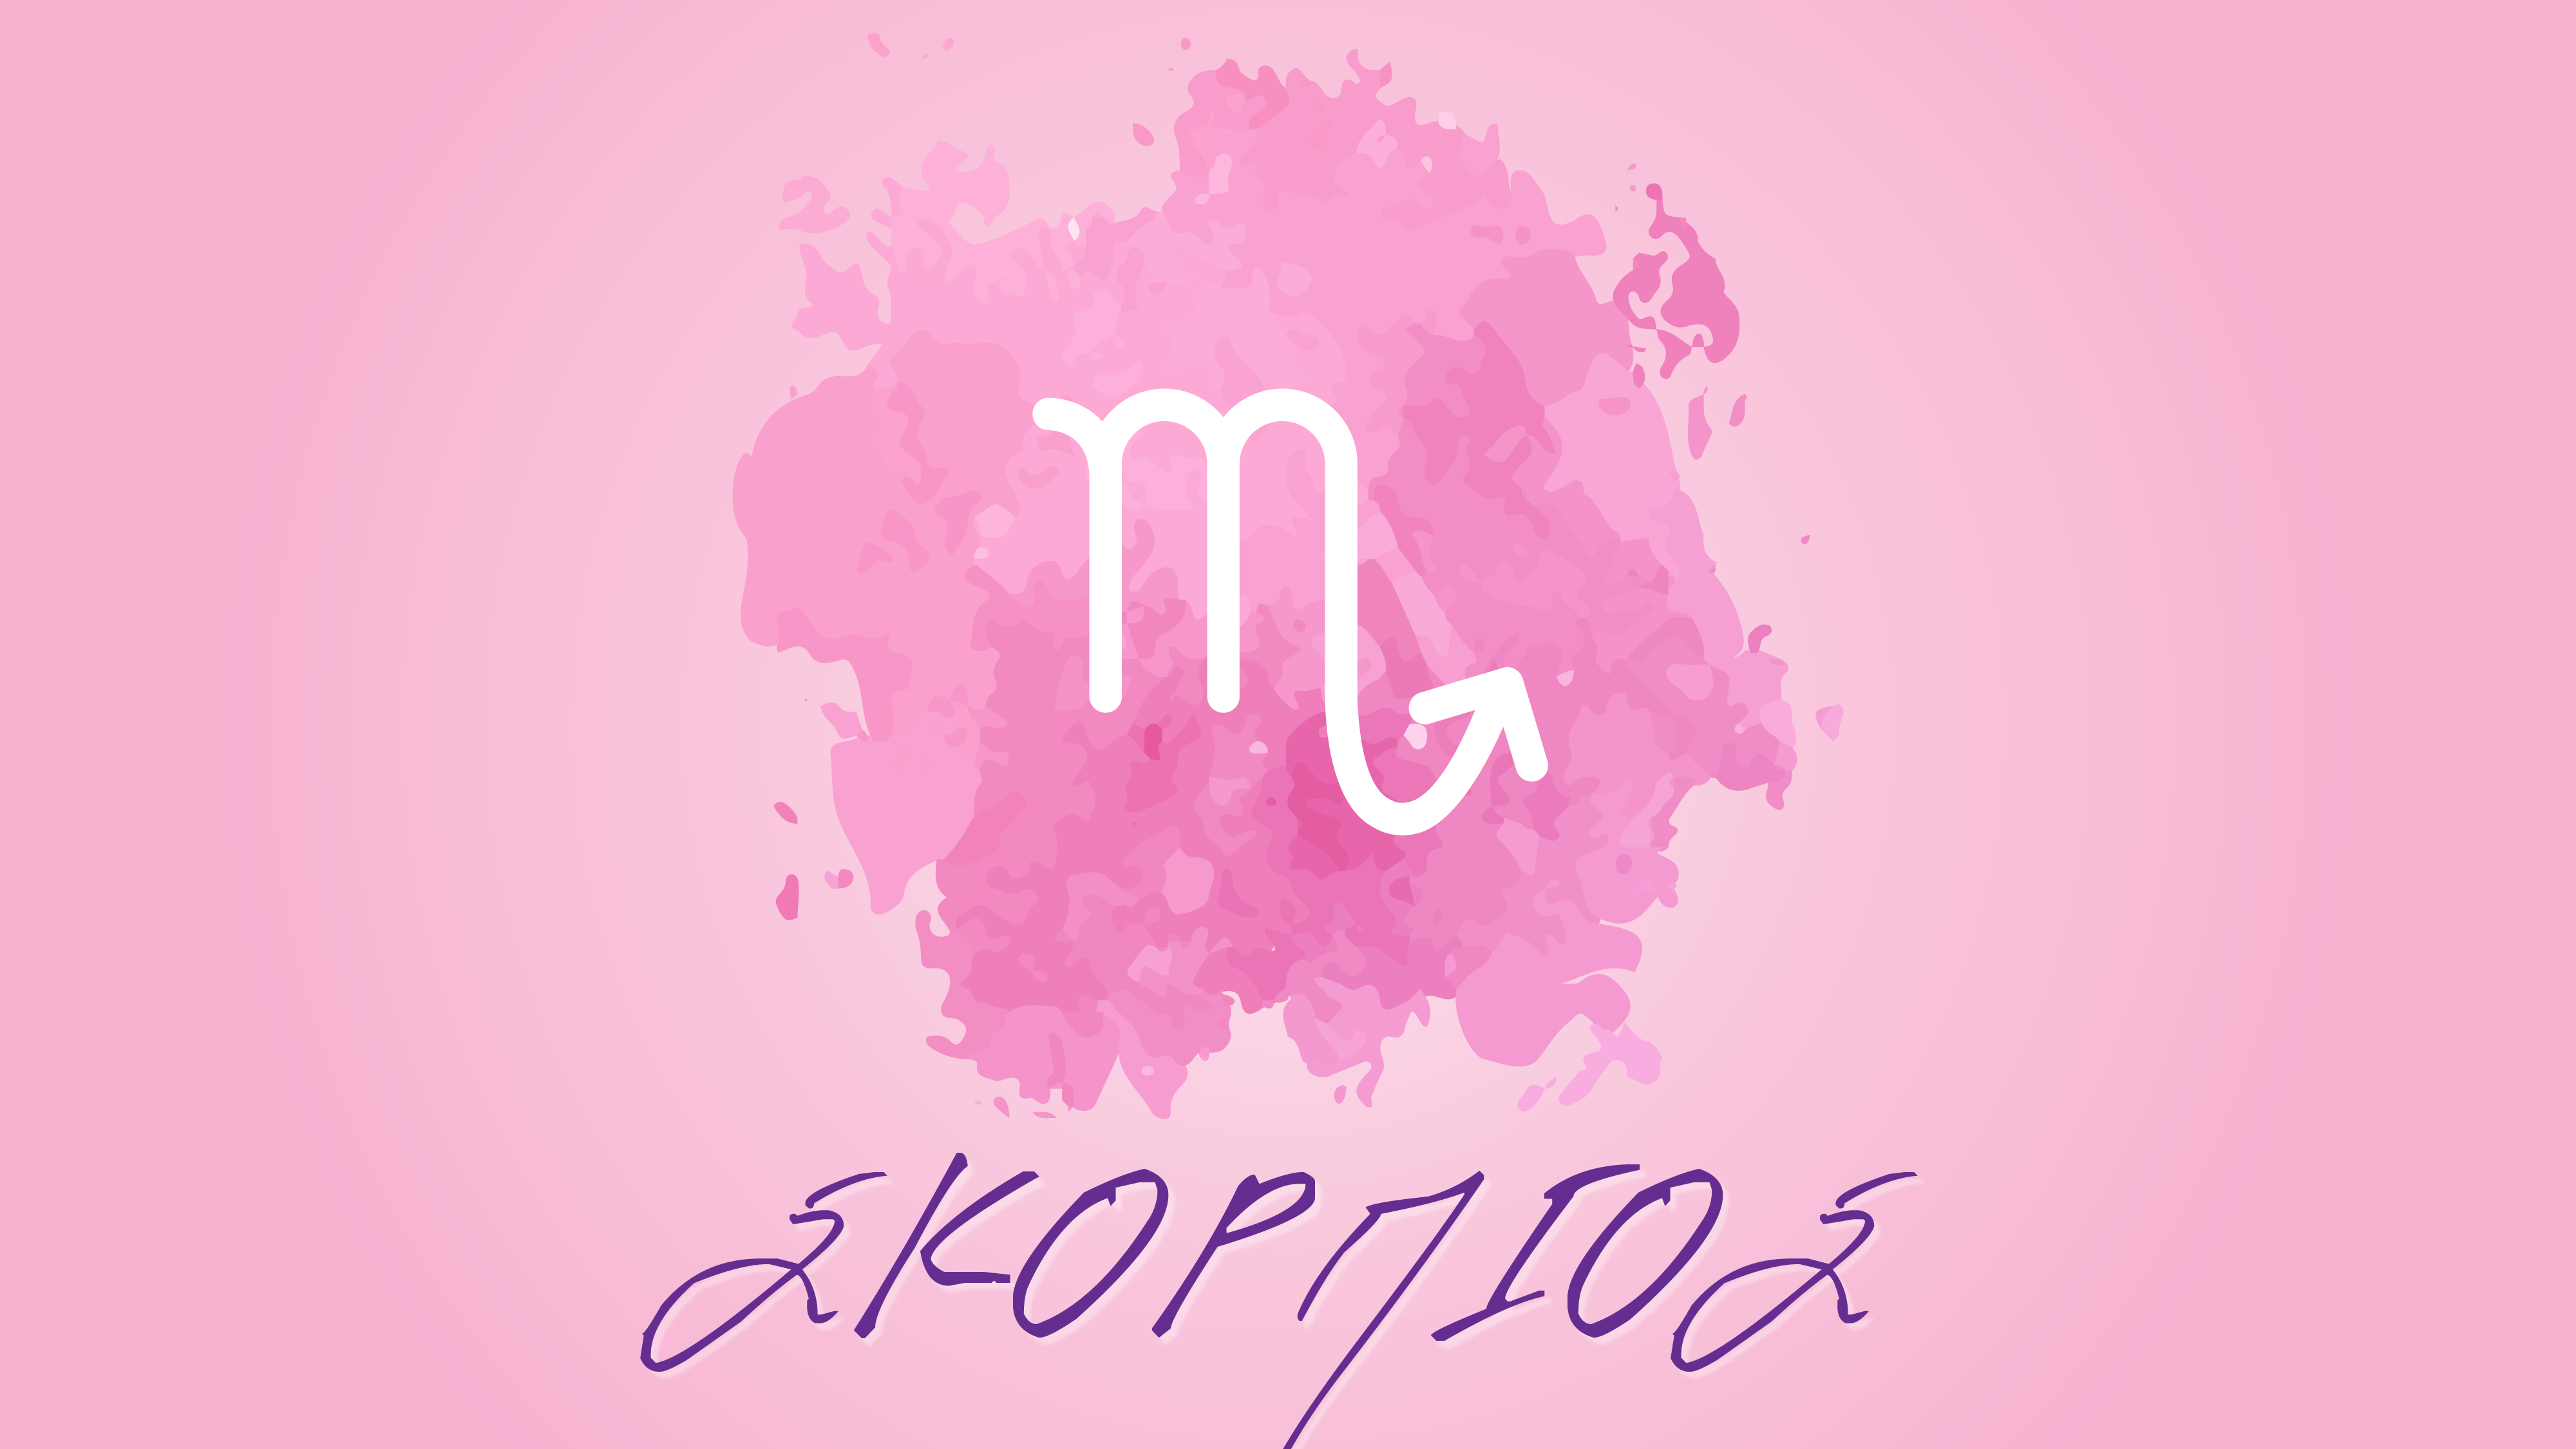 Σκορπιός – Μηνιαίες αστρολογικές προβλέψεις Μαΐου 2021